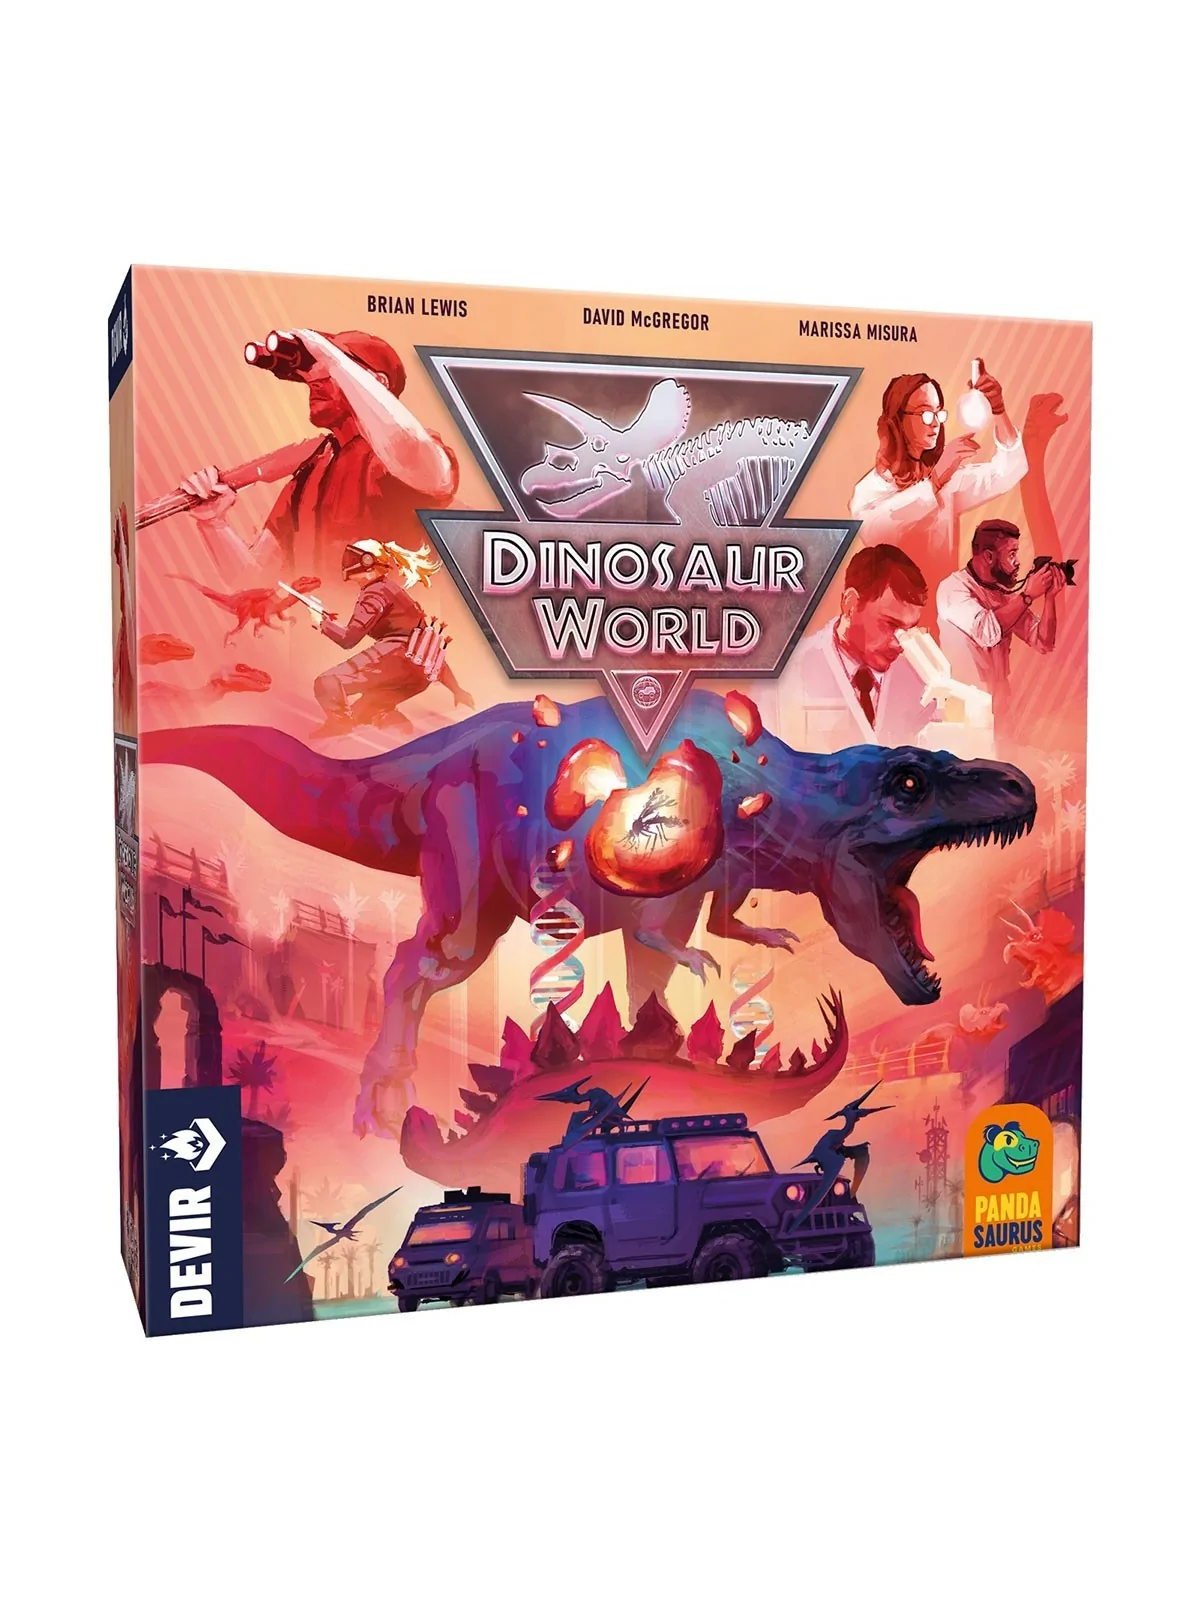 Comprar Dinosaur World barato al mejor precio 54,00 € de Devir